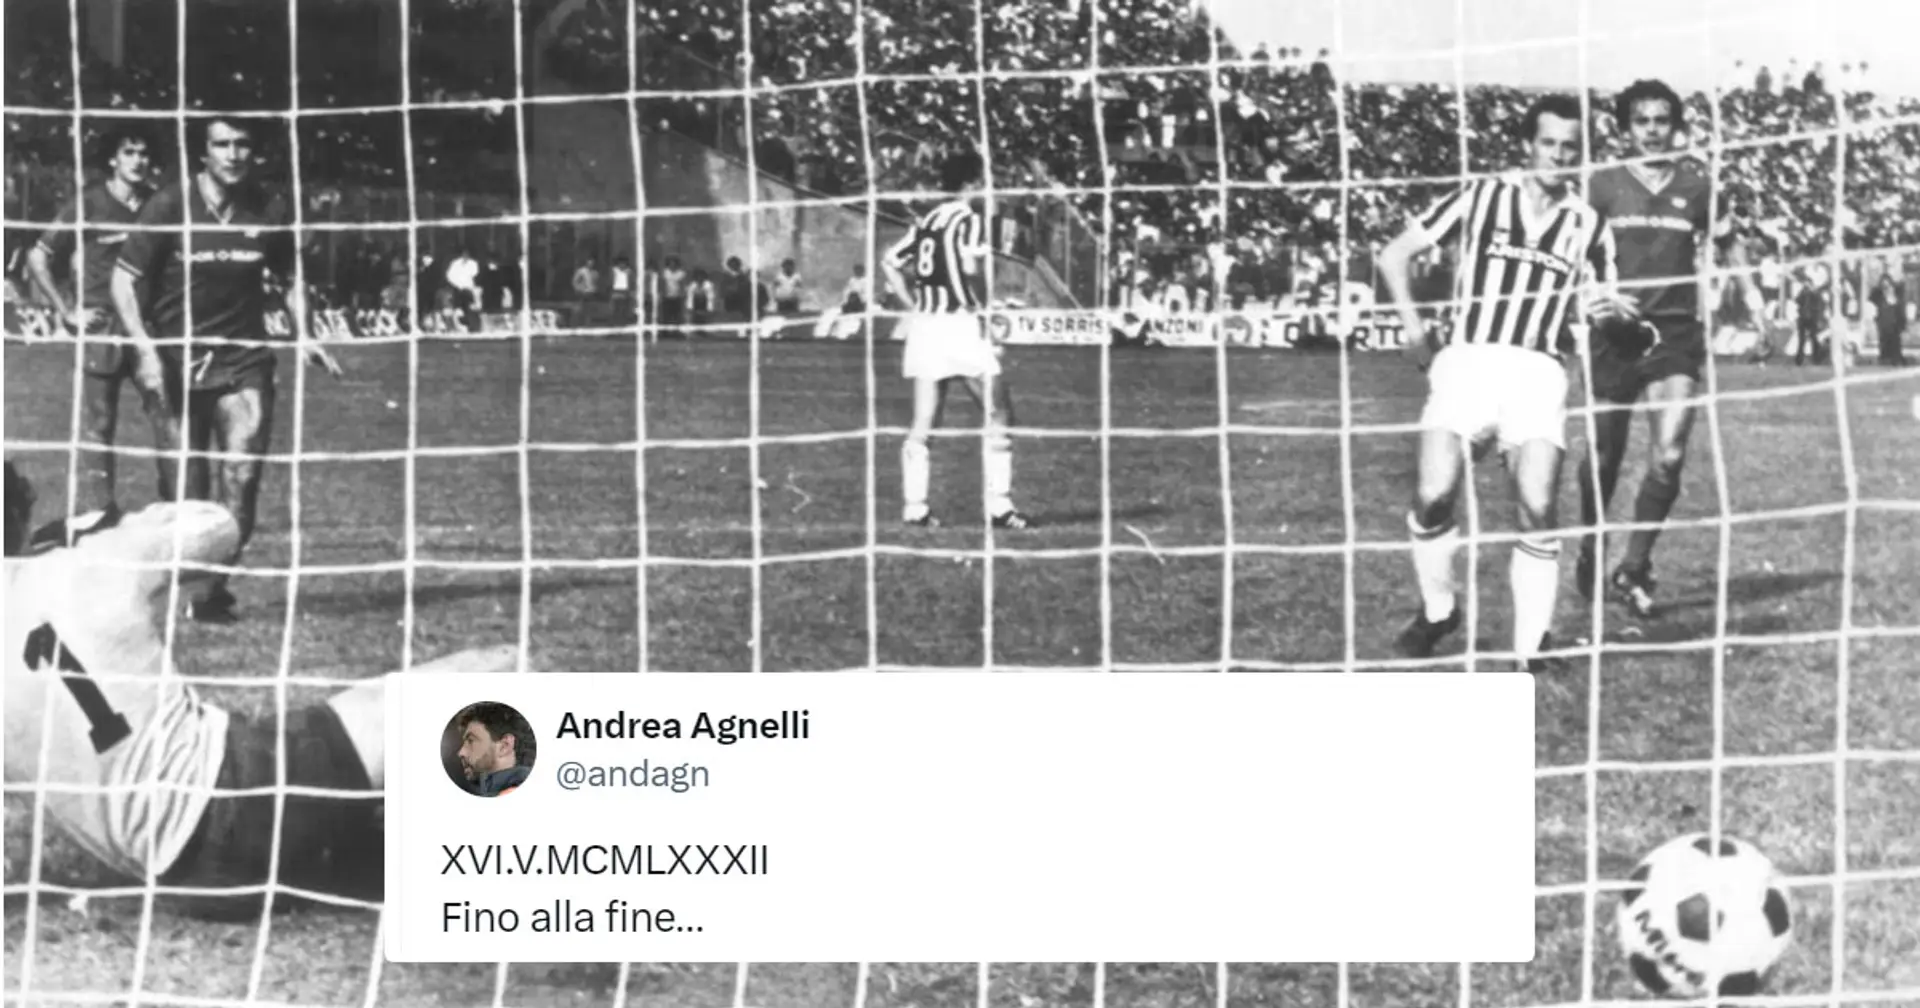 "XVI.V.MCMLXXXII Fino alla fine…": l'Inter vince il 20° scudetto, Andrea Agnelli gli ricorda quando lo ha vinto la Juventus